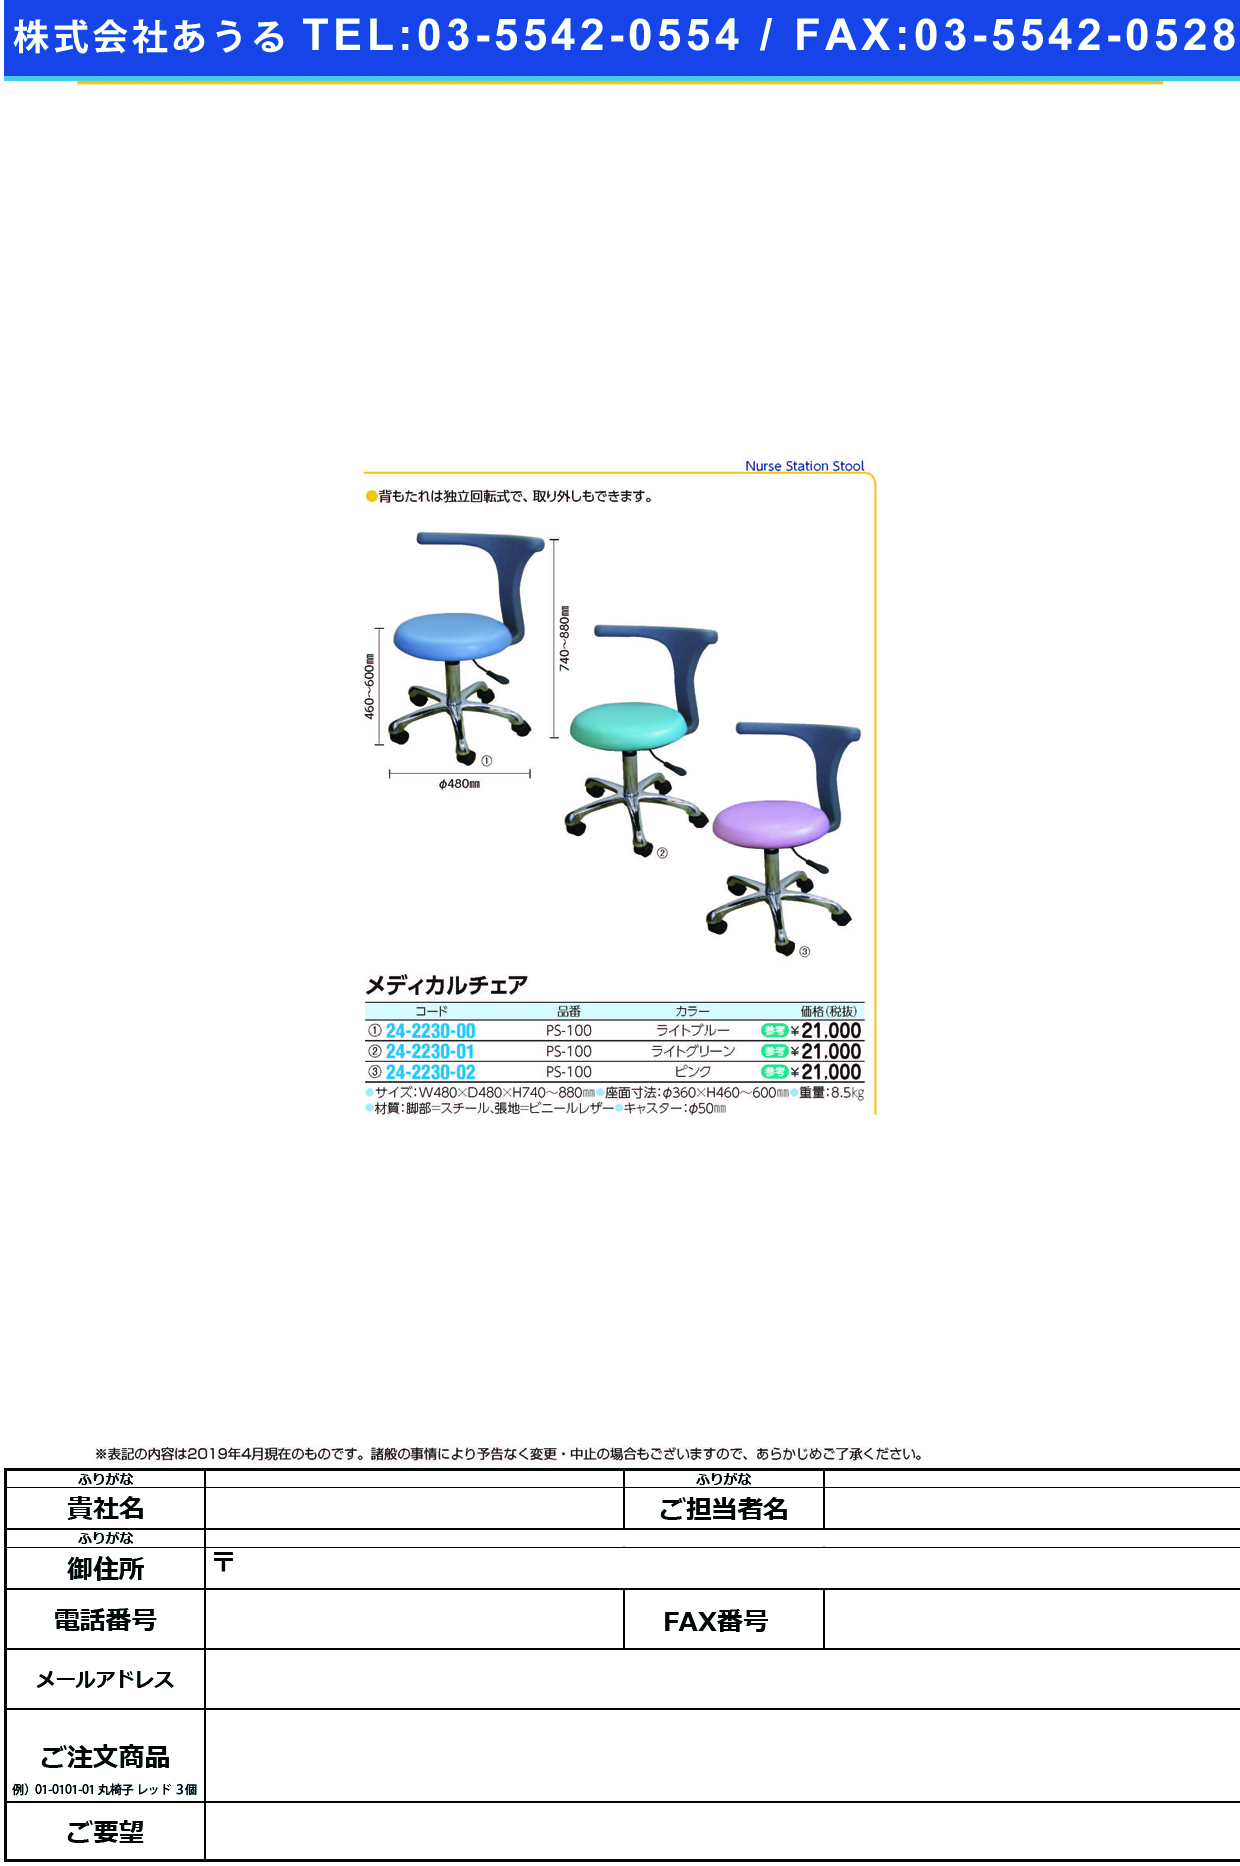 (24-2230-00)メディカルチェア PS-100(ﾗｲﾄﾌﾞﾙｰ) ﾒﾃﾞｨｶﾙﾁｪｱ【1台単位】【2019年カタログ商品】